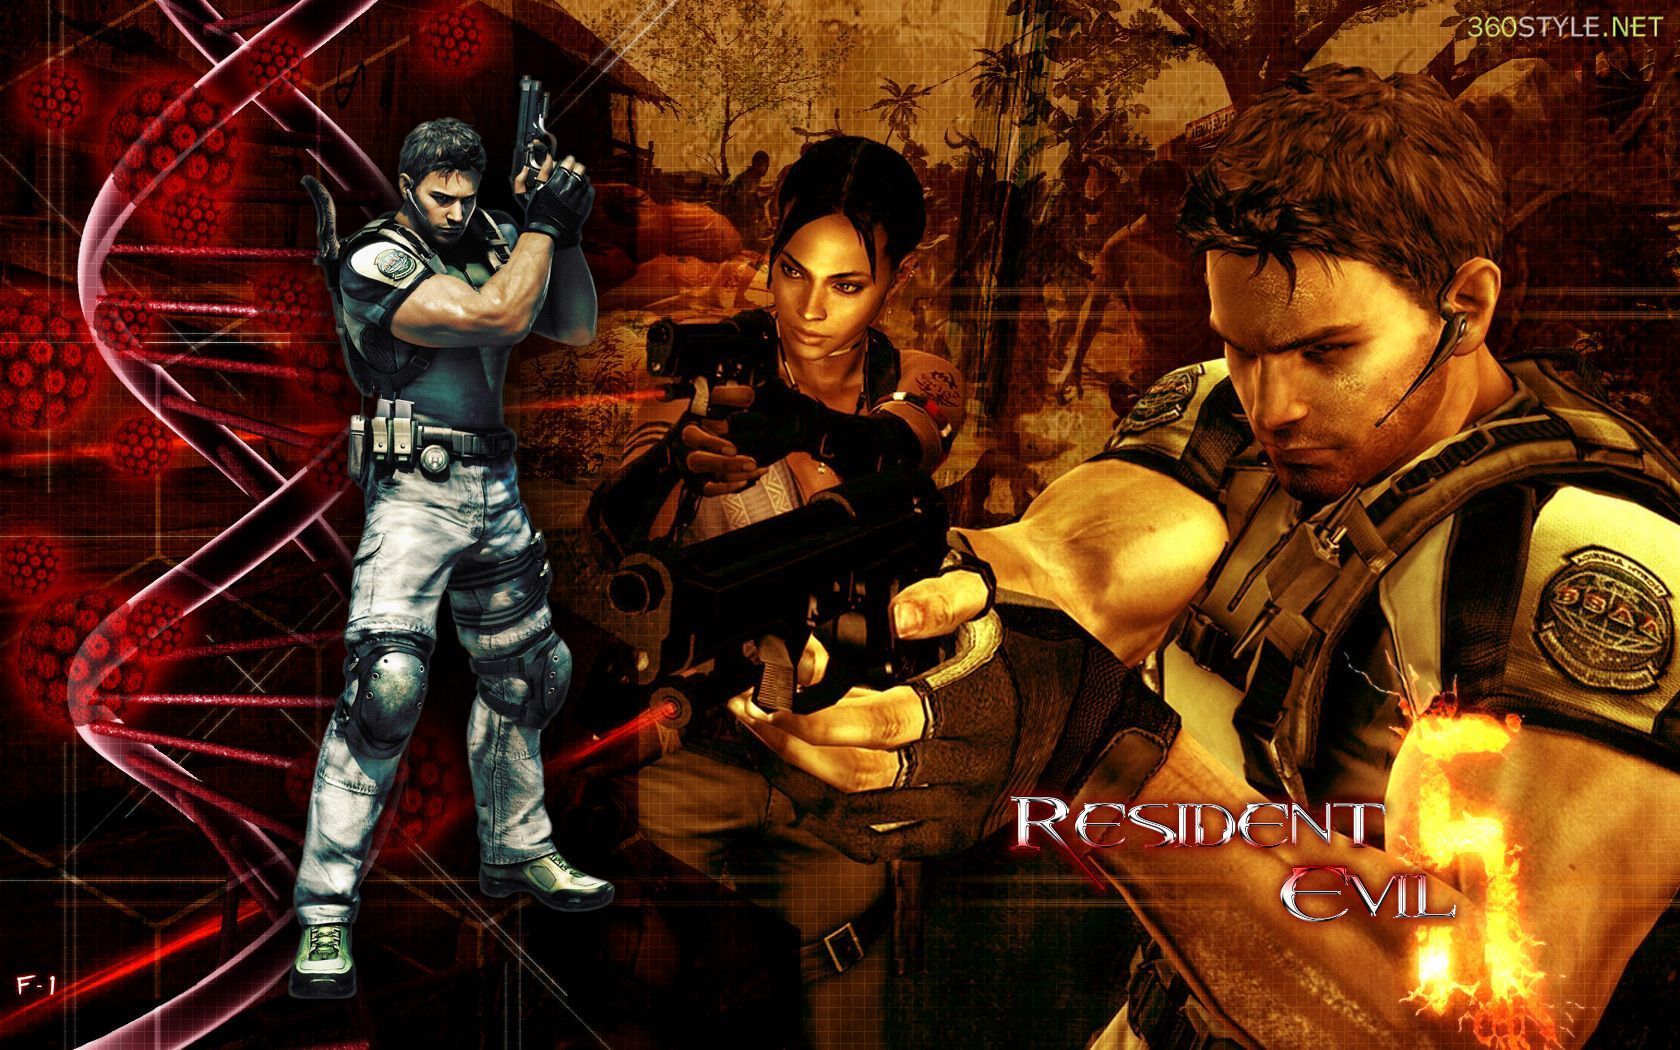 Resident Evil 5 Wallpapers - Resident Evil 5 Message Board for